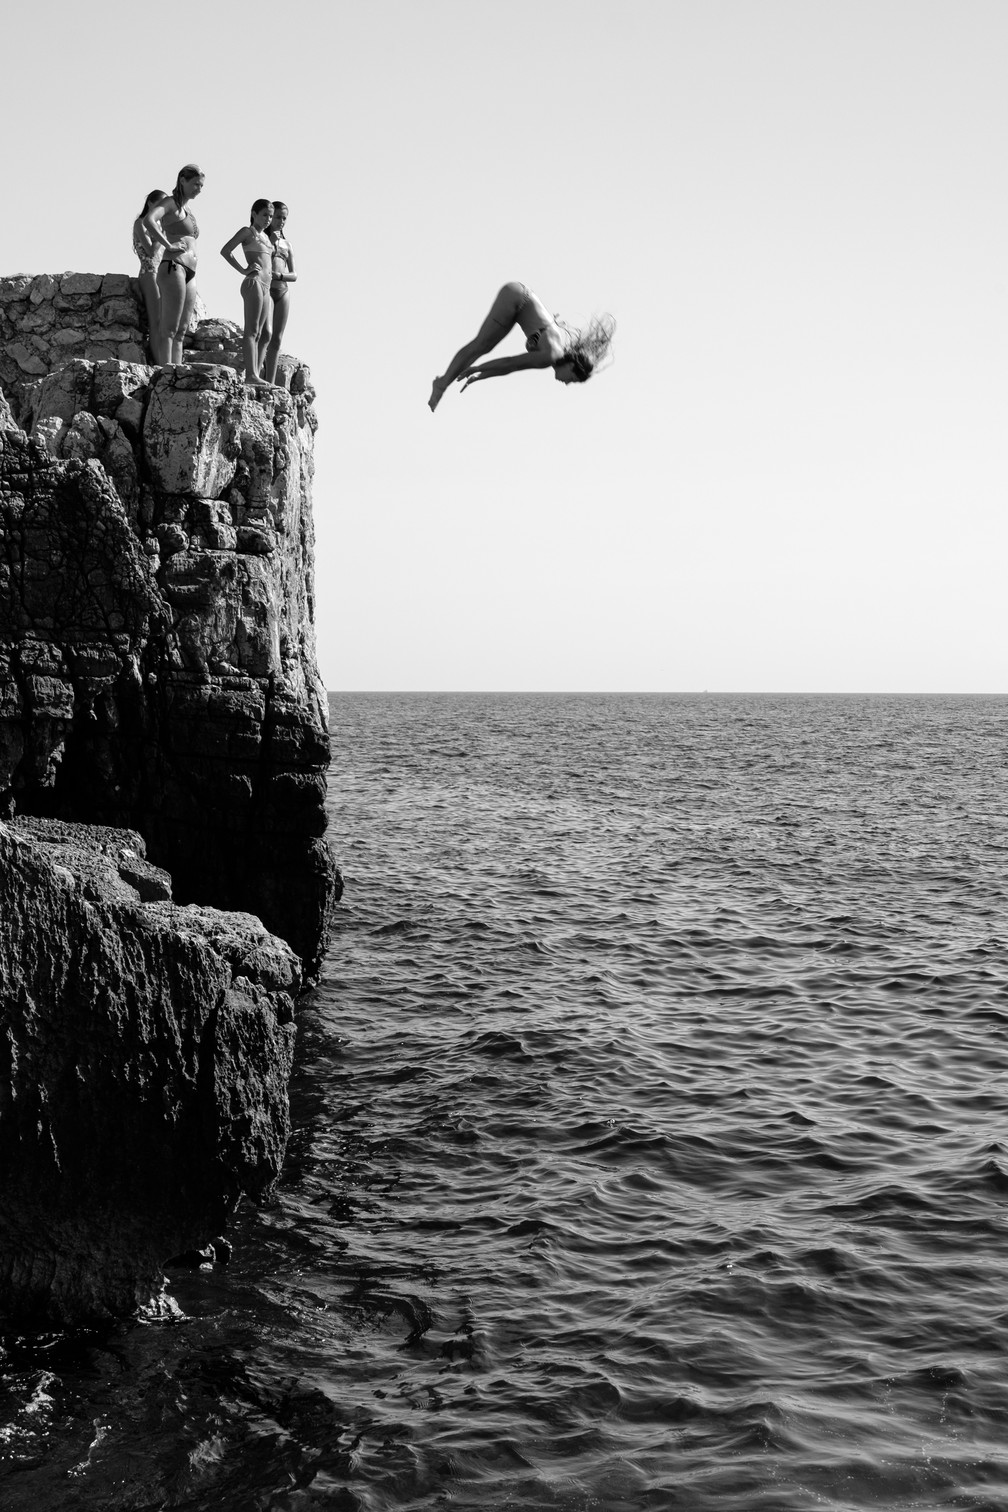 Movimento: 'Girl Power', fotografia em preto e branco que registra o momento em que uma mulher salta de penhasco na ilha de Lokrum, perto de Dubrovnik, na Croácia — Foto: Marijo Maduna (Croácia)/Sony World Photography Awards